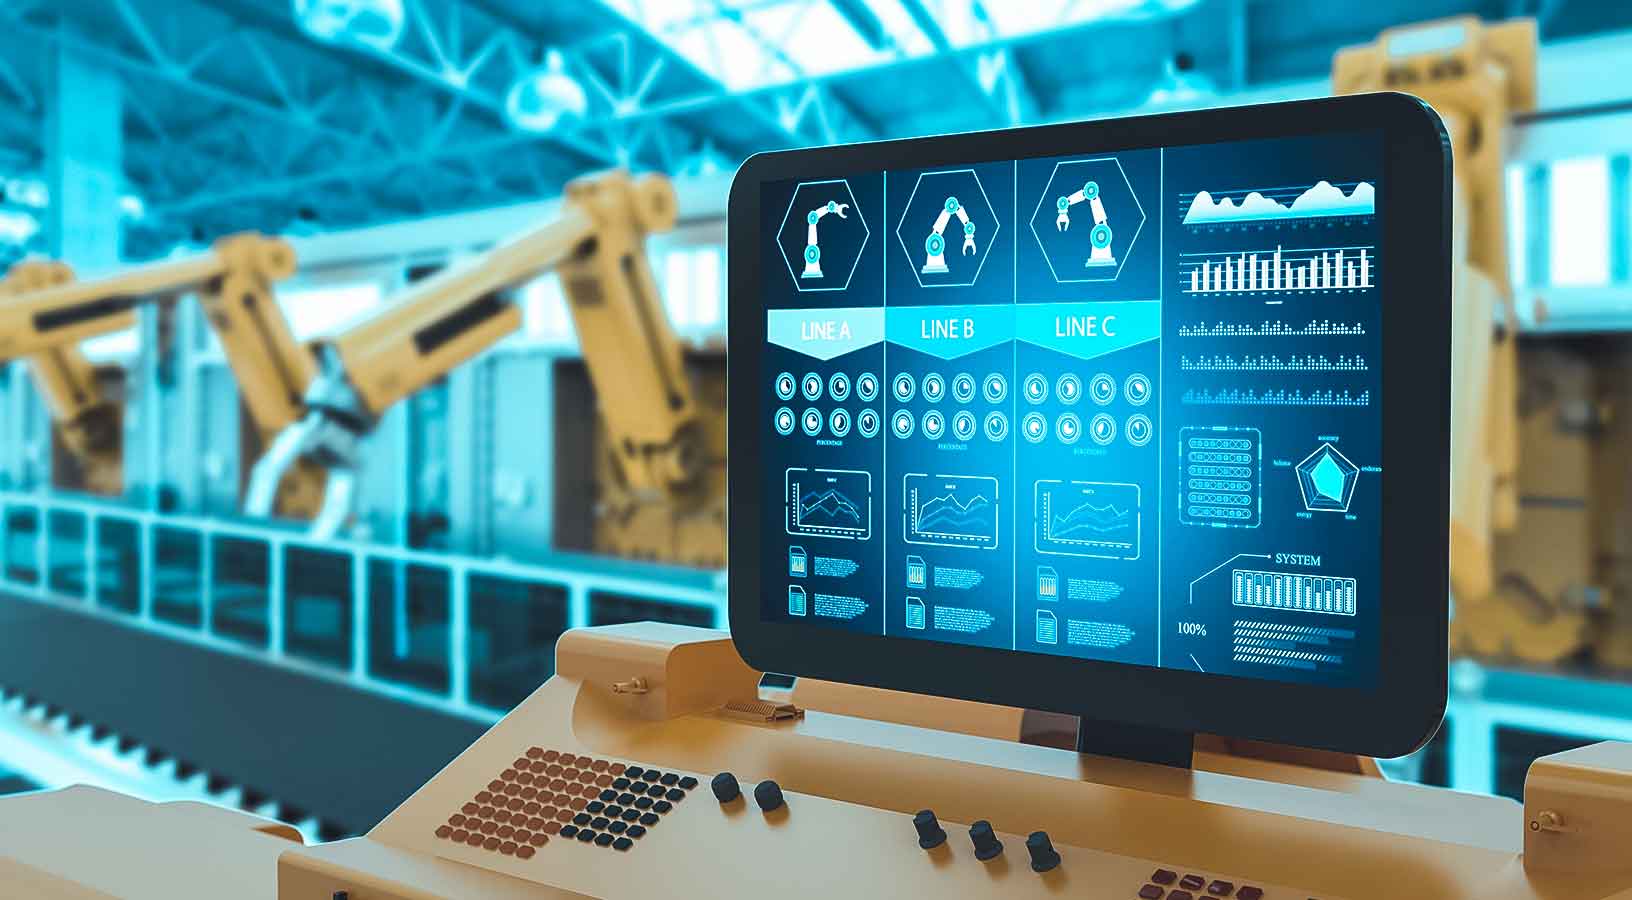 ロボットを背景に製造工程の情報を表示するラインサイドモニター 